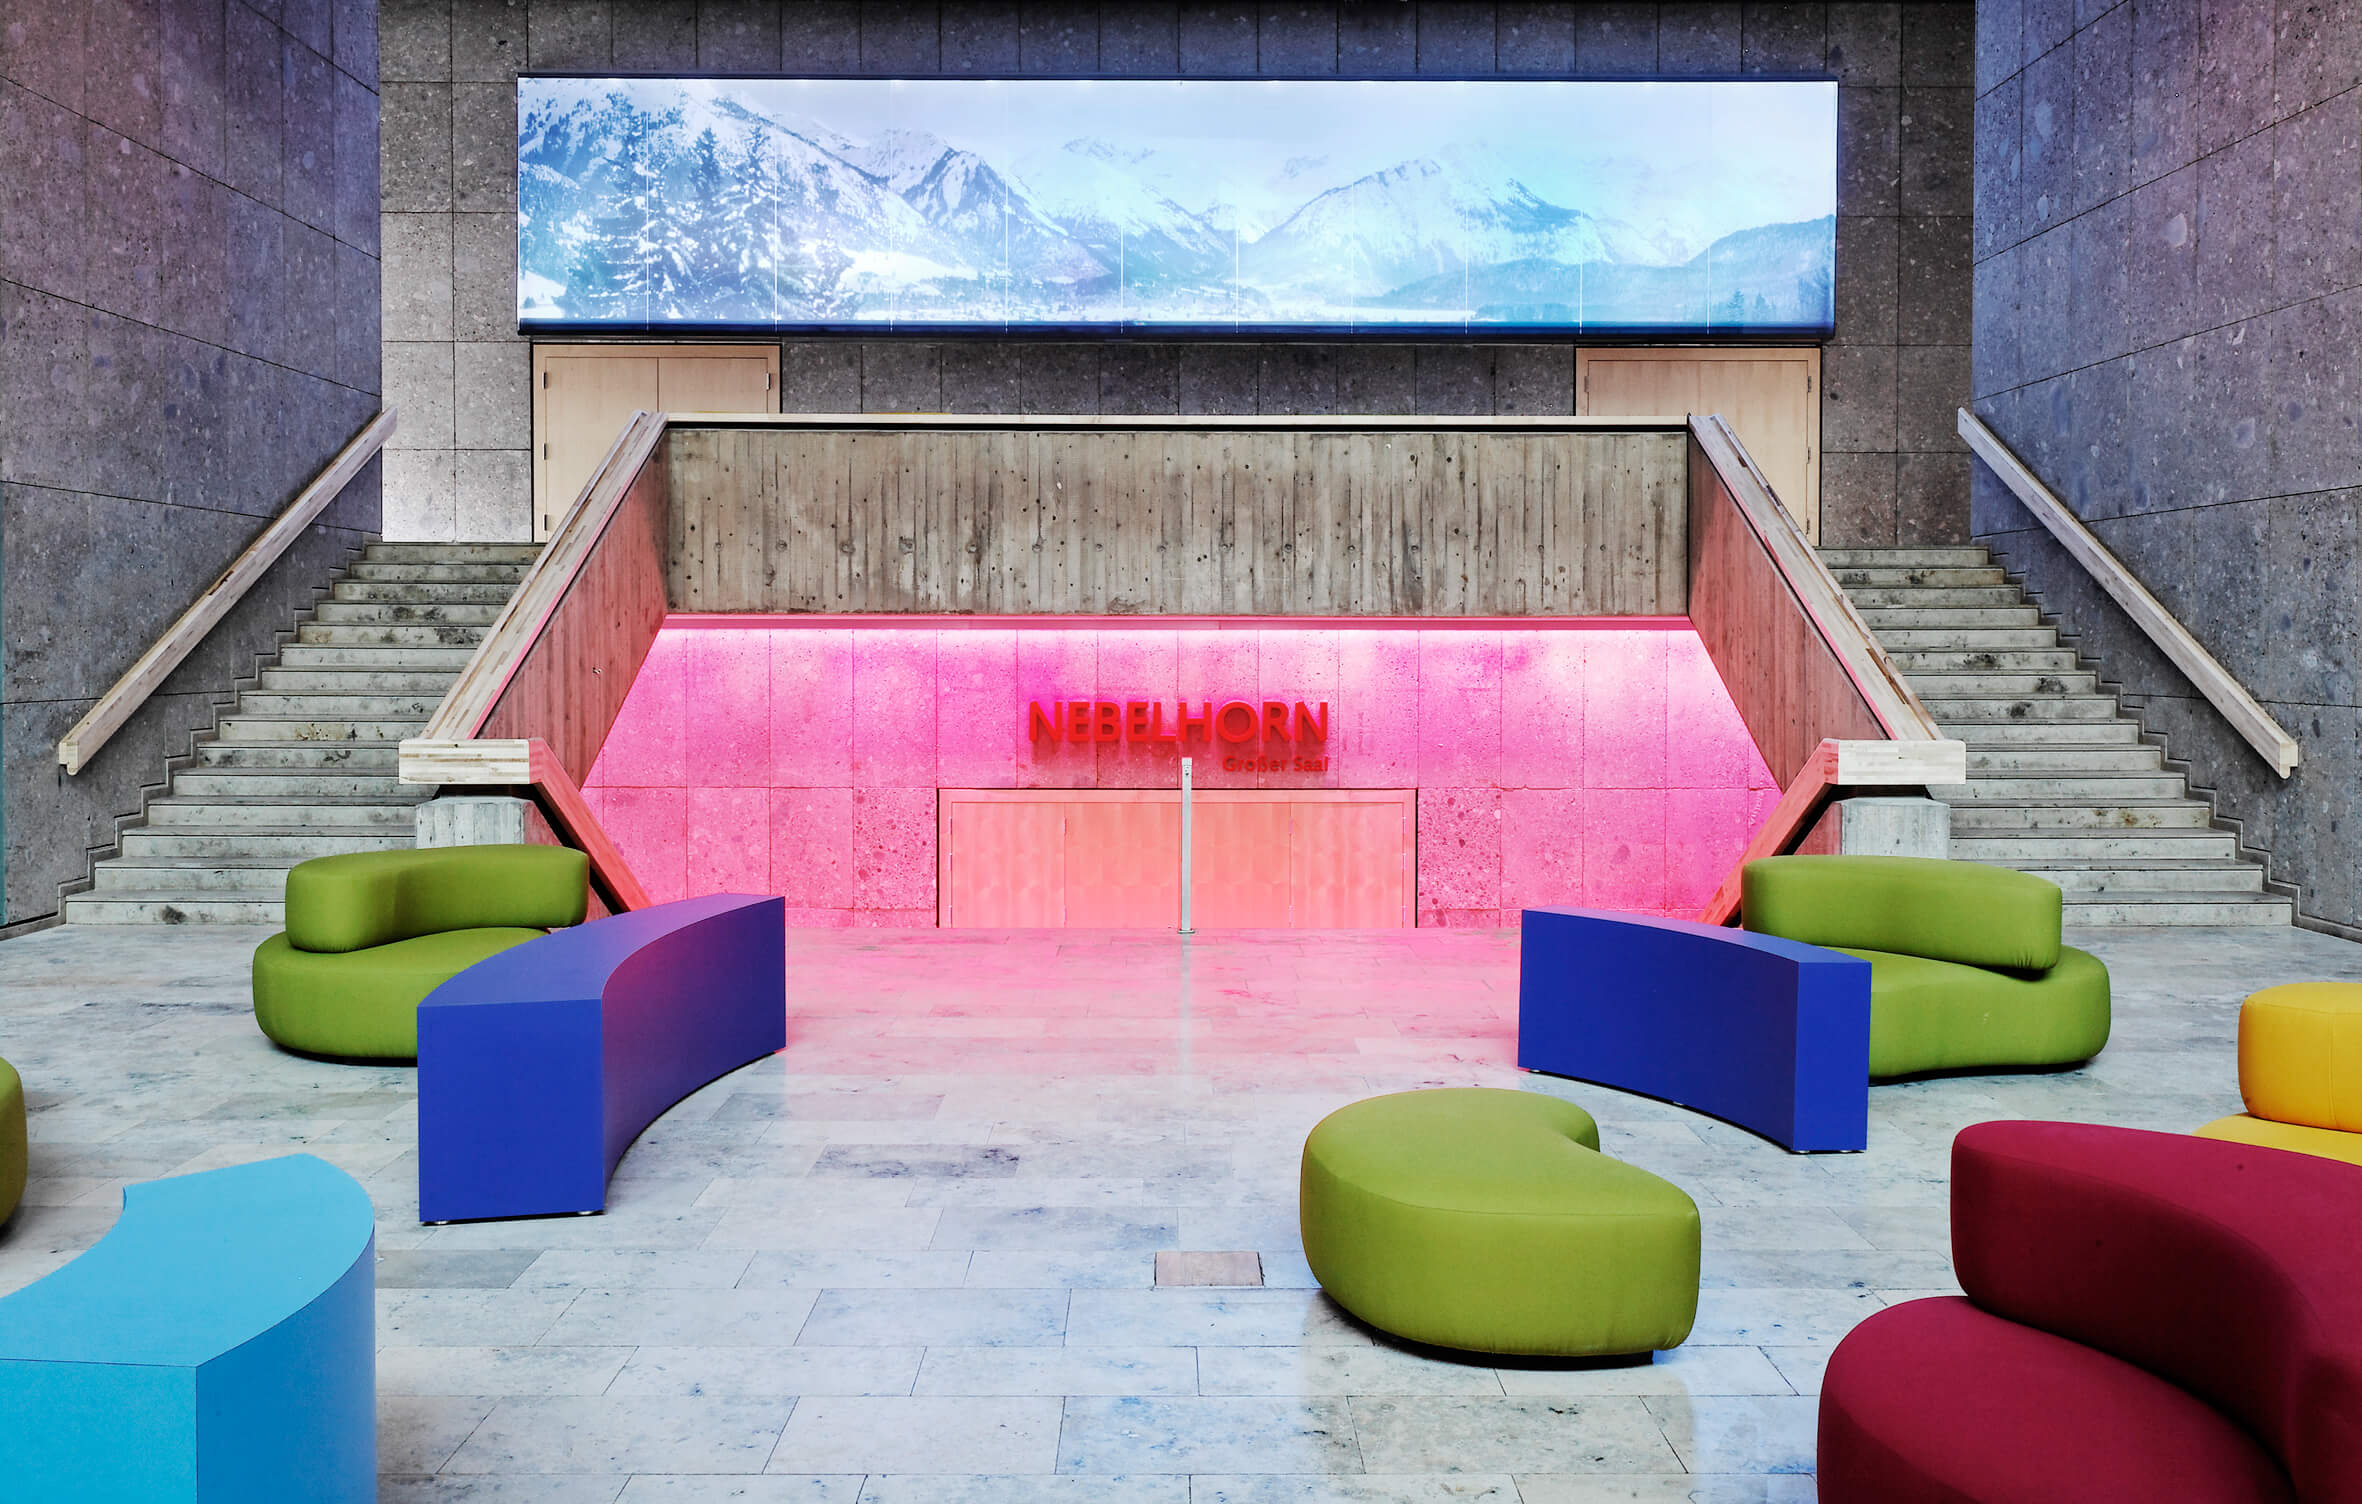 Eingangsbereich des neuen Kurhauses in Oberstdorf mit farbigen Sesseln und einem raumgebenden Wandbild mit Bergpanorama.